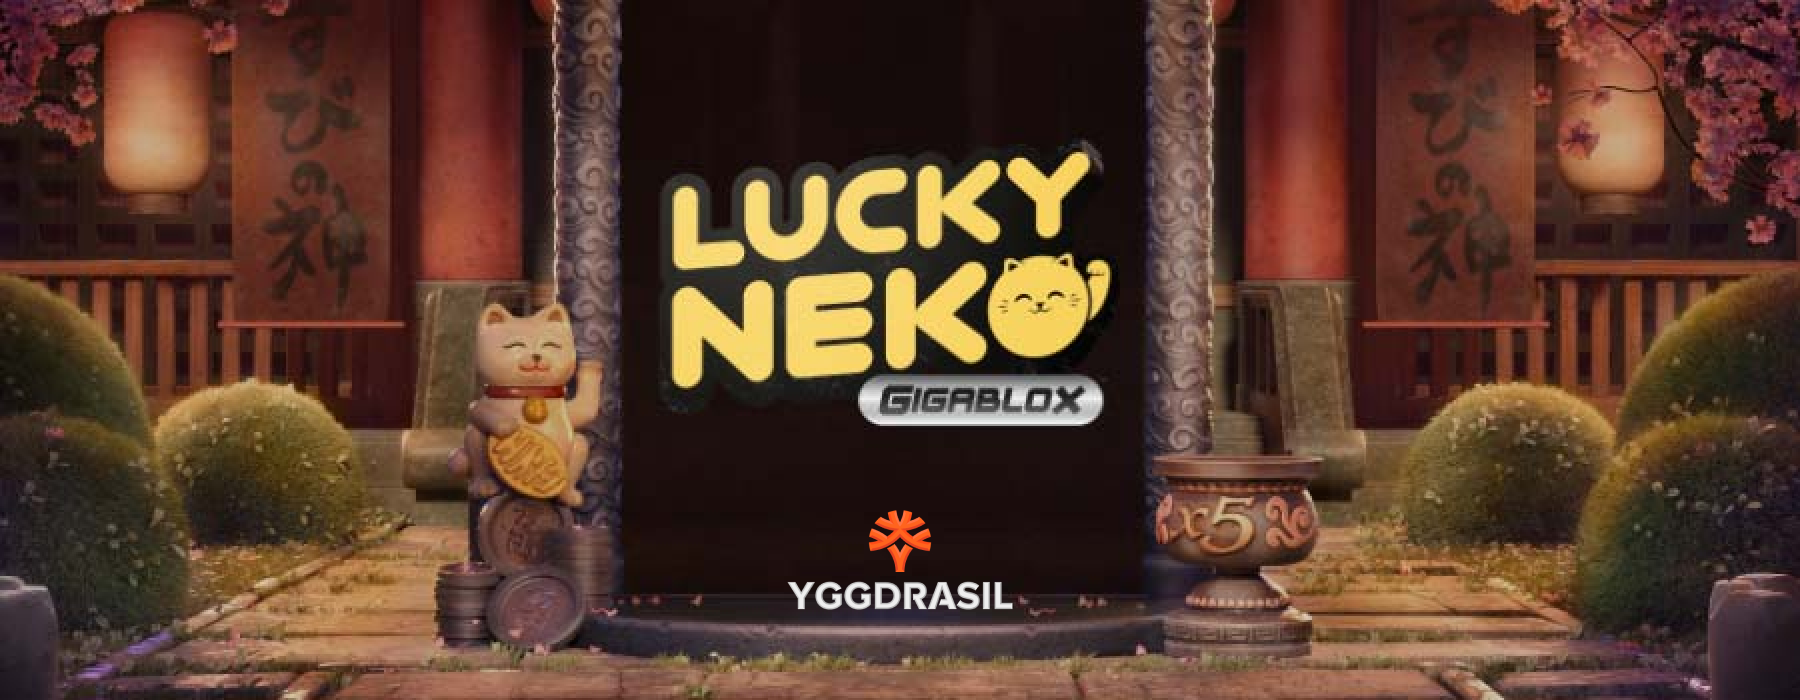 Lucky Neko Gigablox ng Yggdrasil